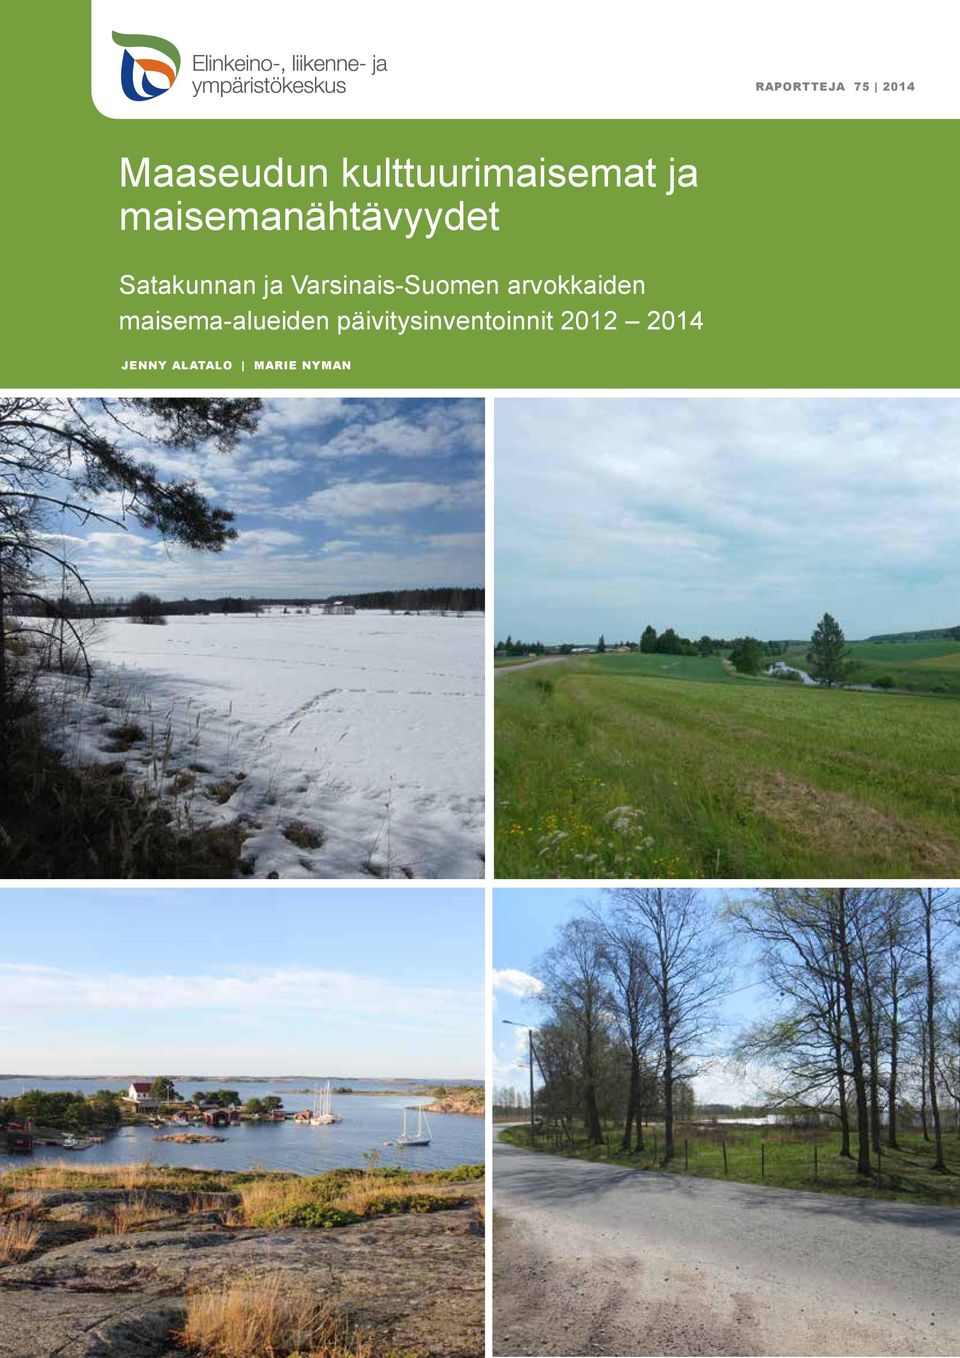 Varsinais-Suomen arvokkaiden maisema-alueiden